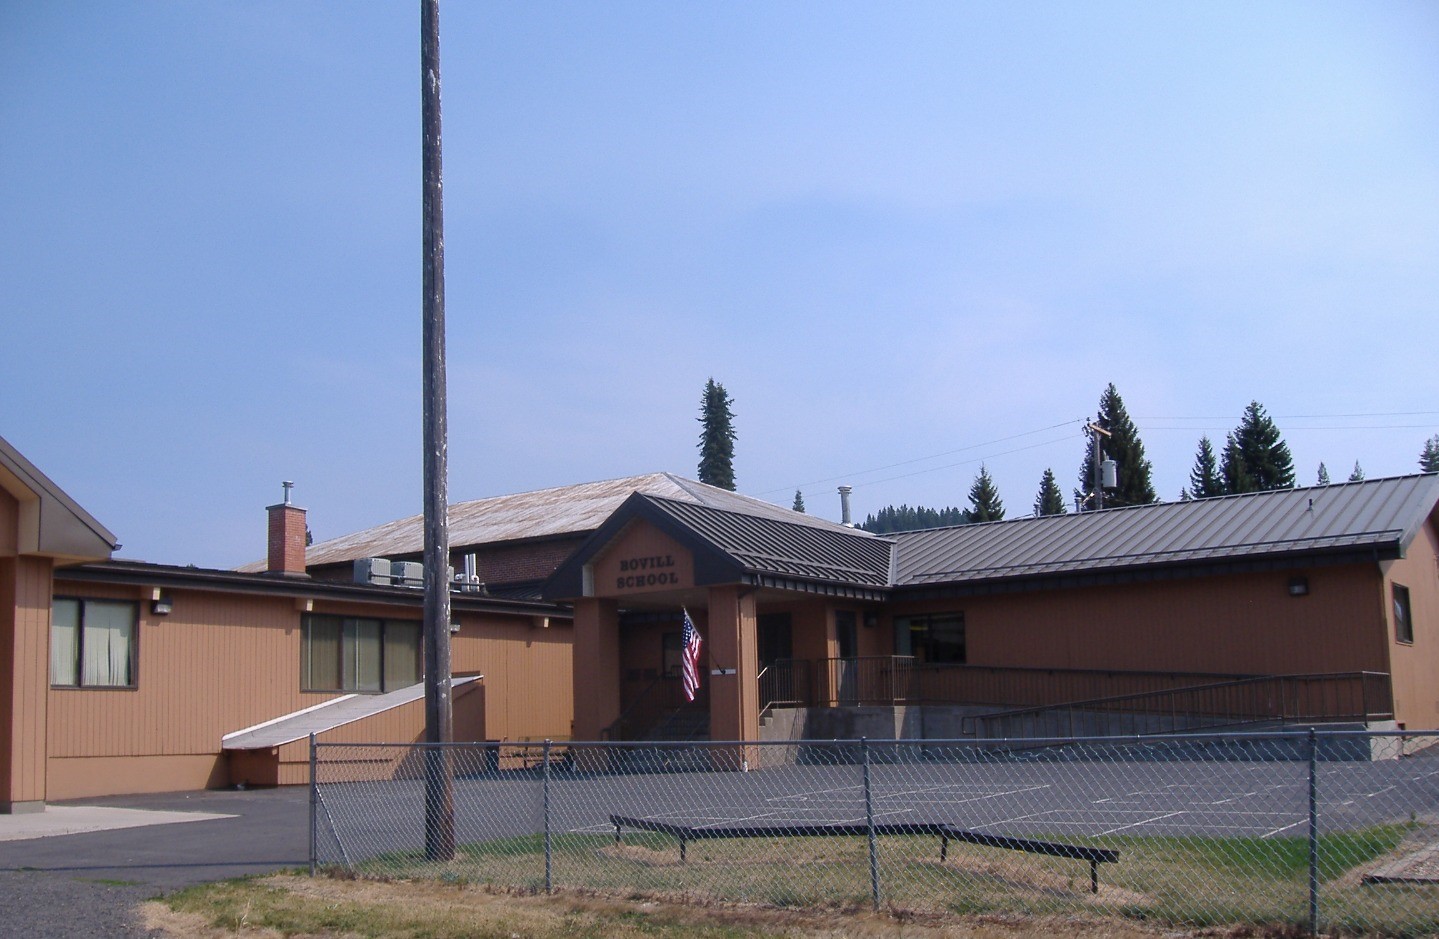 Bovill Elementary School